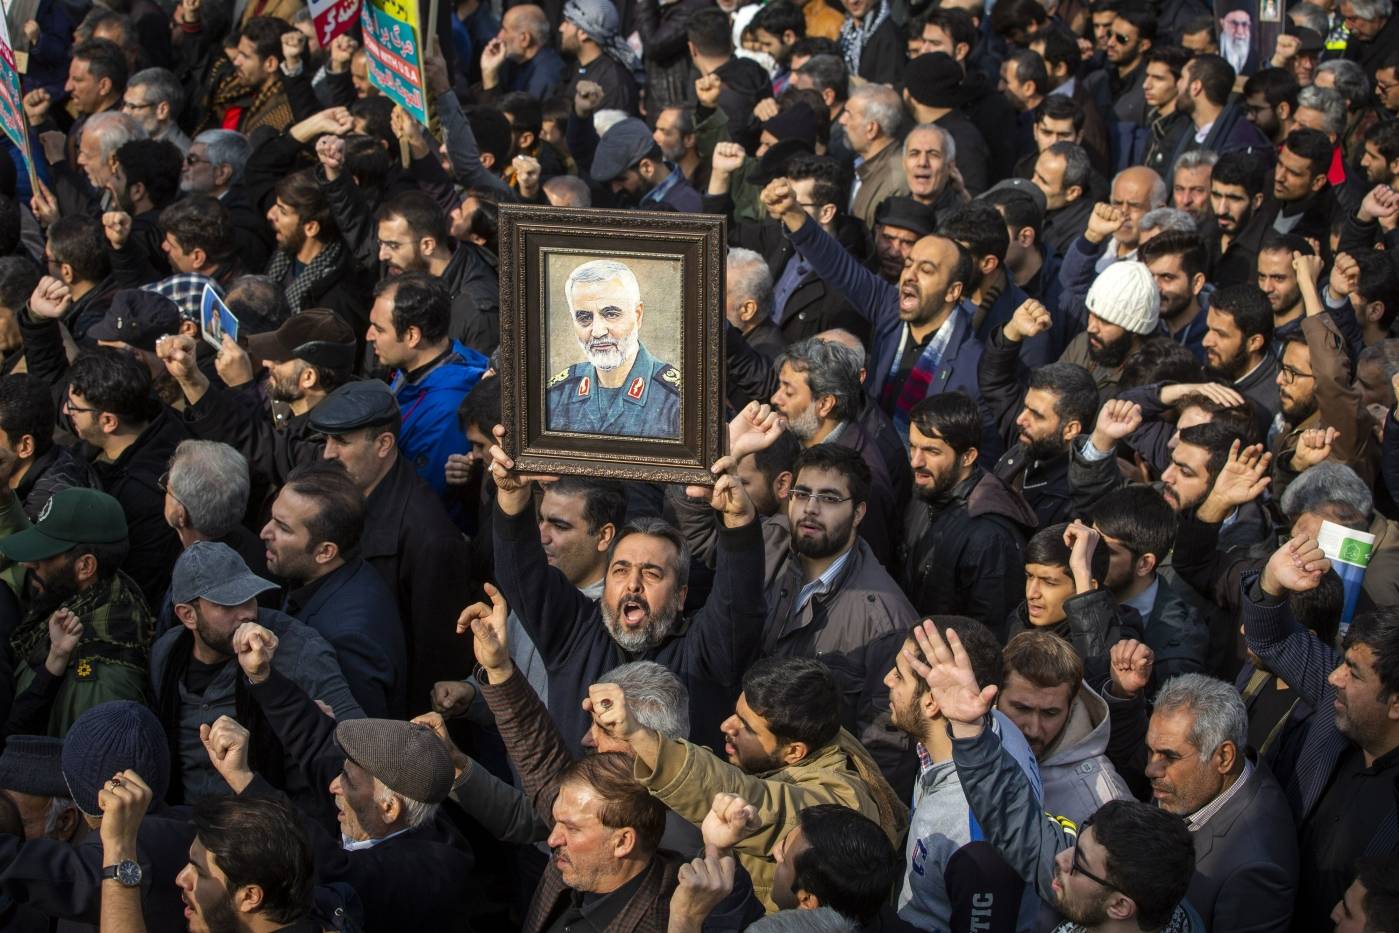 Konflikten mellan USA och Iran eskalerade efter att USA dödade den iranske militärledaren Qassem Suleimani, den 3 januari 2020. Foto: Maryam Rahmanian/UPI/Shutterstock/NTB.